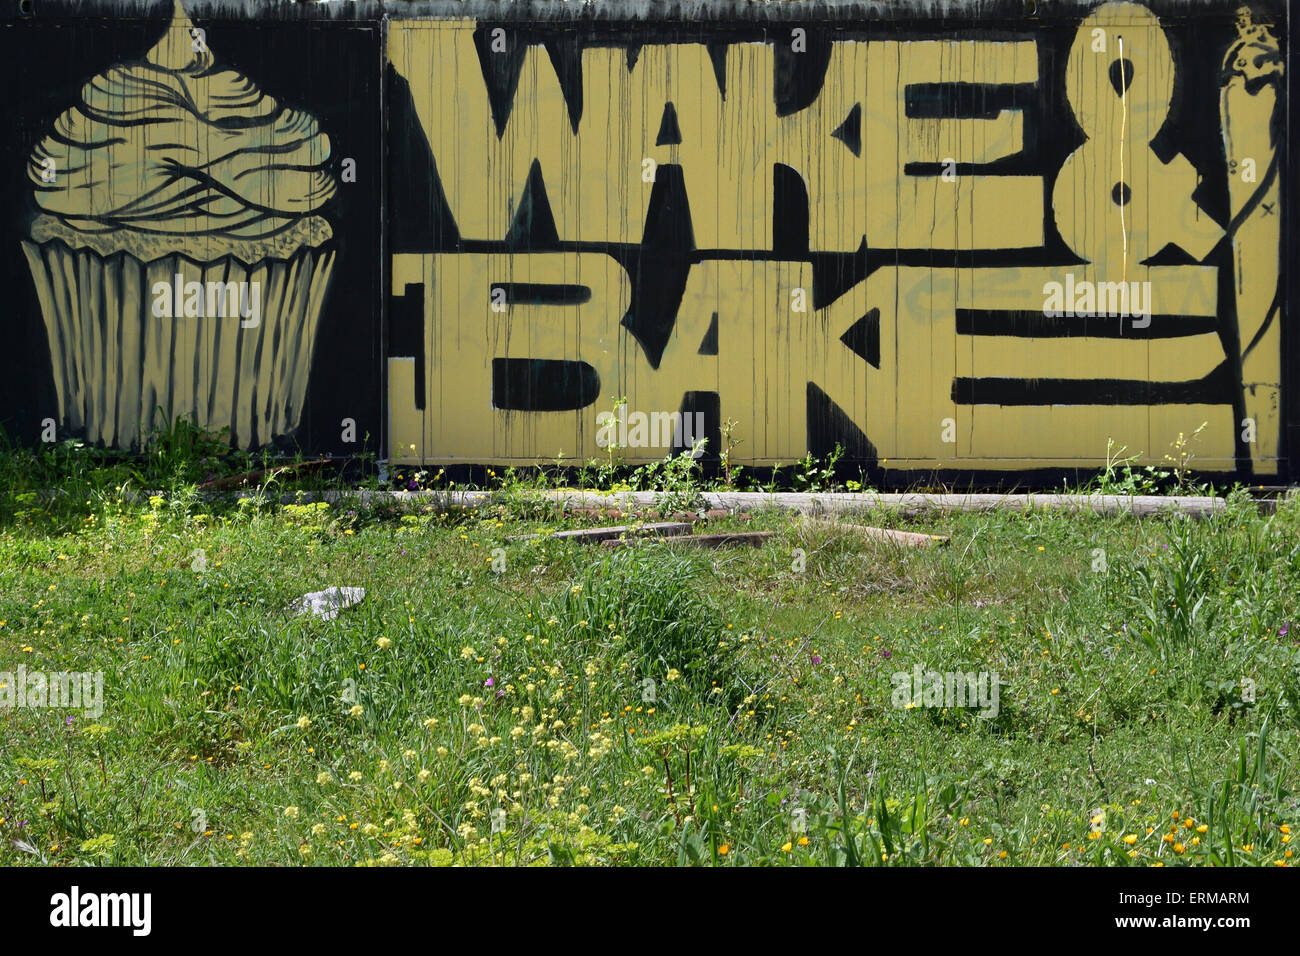 Cupcake und Cannabis gerollt Zigarette Graffiti mit wachen und Motto Slang für Rauchen von Marihuana zum Frühstück backen. Stockfoto